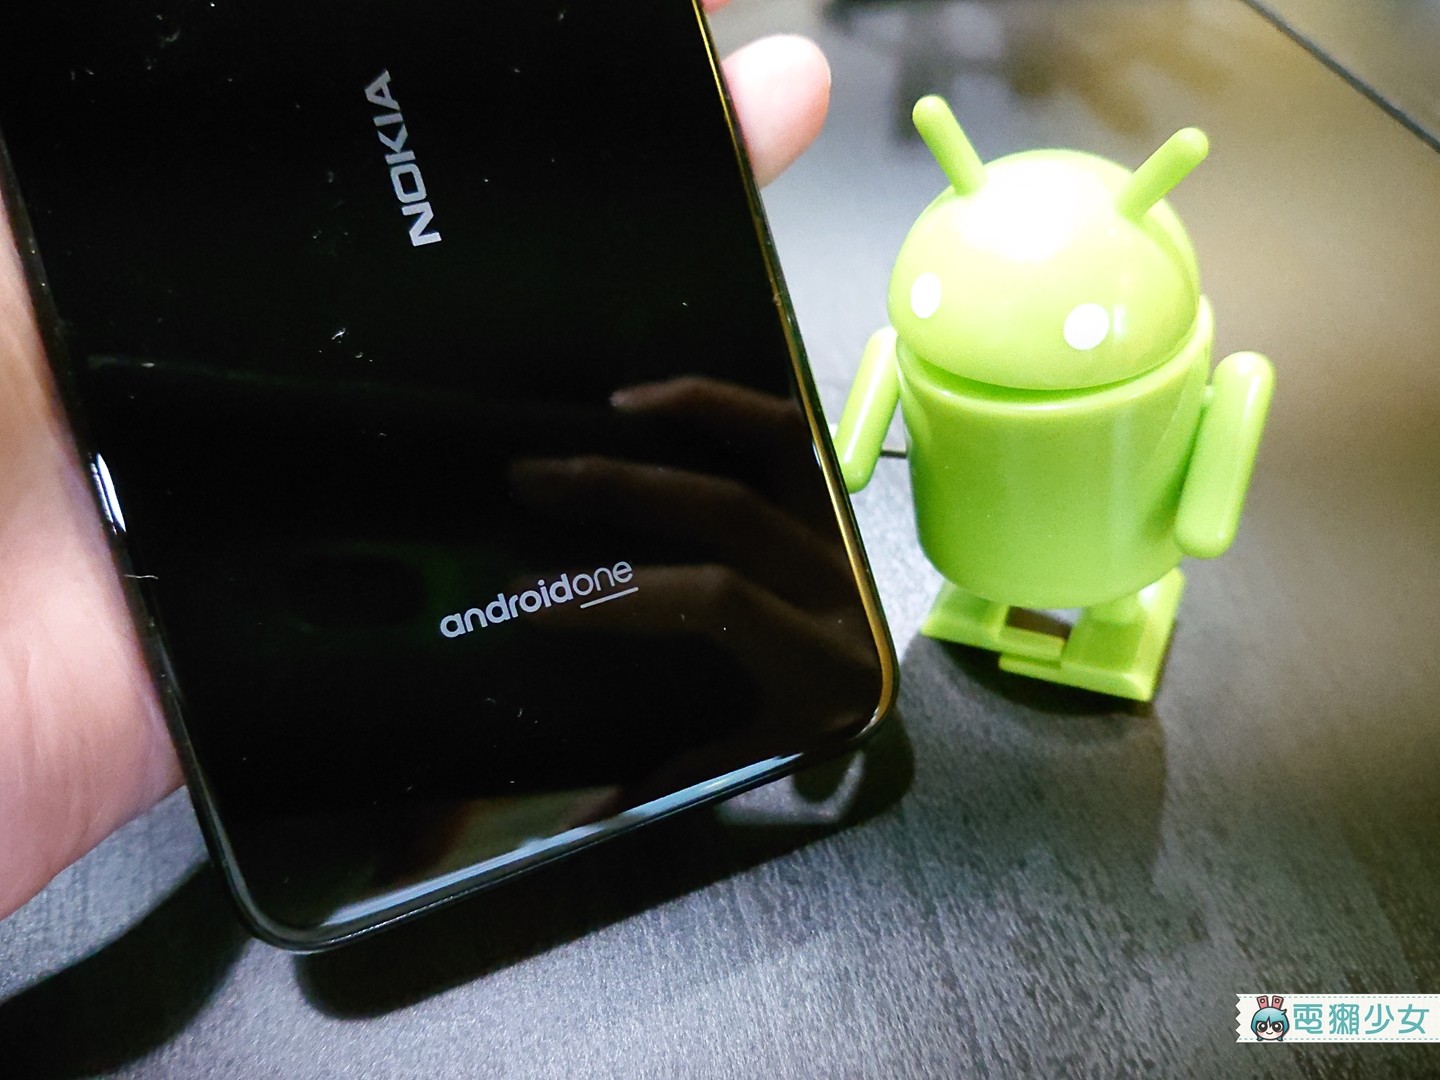 開箱 | Nokia 推出最超值的 Android One 手機 -  Nokia 5.1 Plus 質感滿分、 AI 晶片加持的雙鏡頭相機拍攝